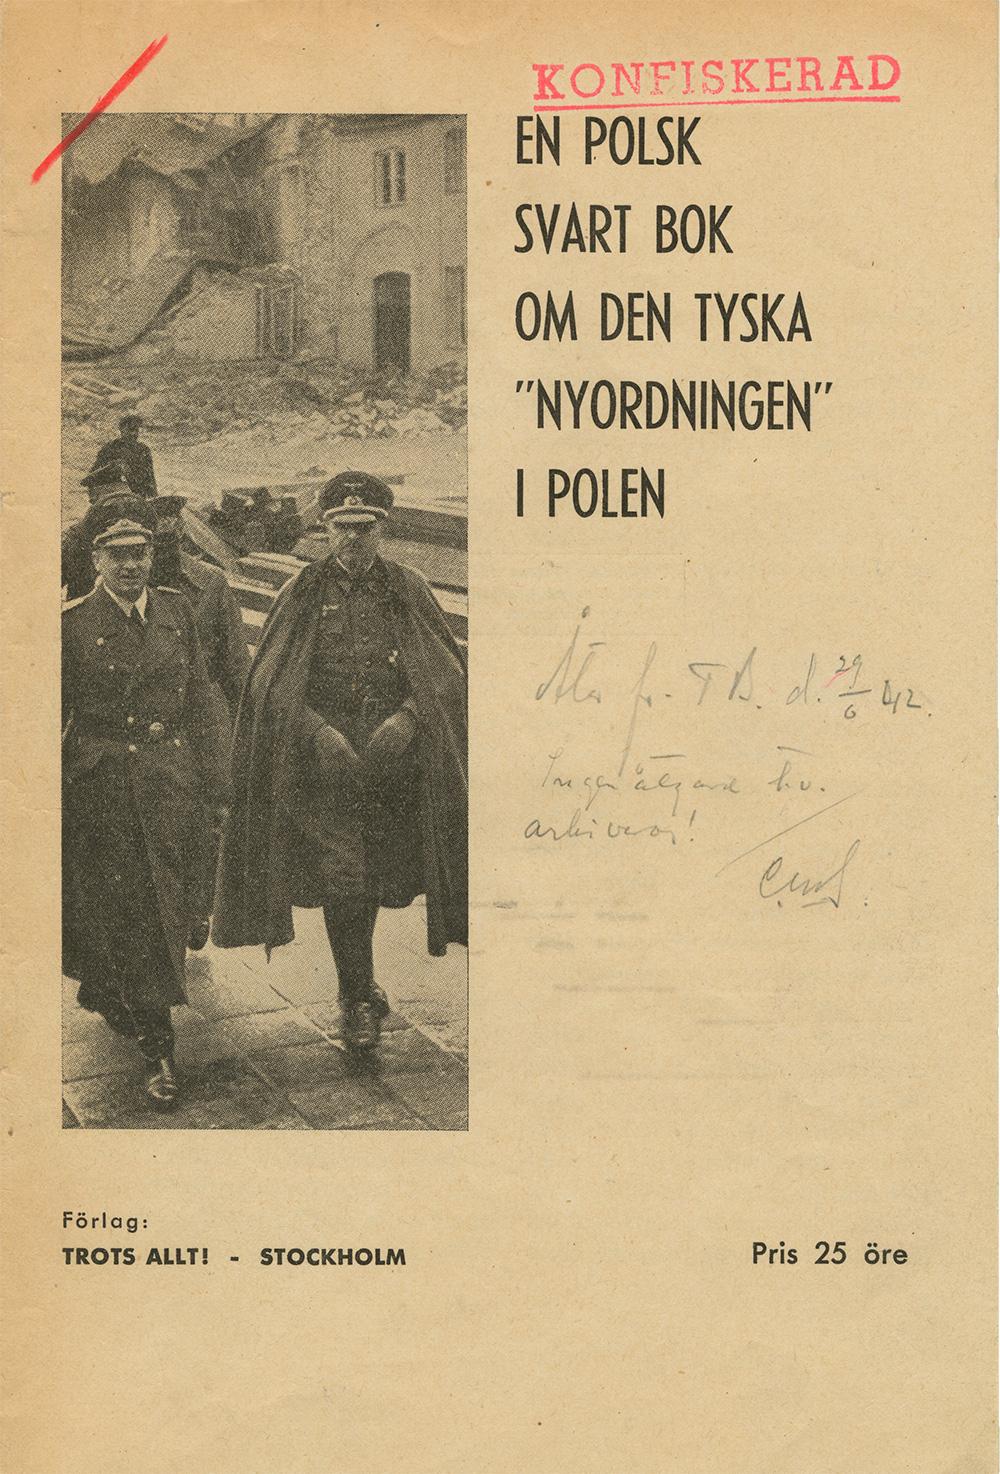 I ”Warszawasvenskarna” skriver Staffan Thorsell om dokumenten Sven Norrman smugglade ut och Per Albin Hansson förbjöd.